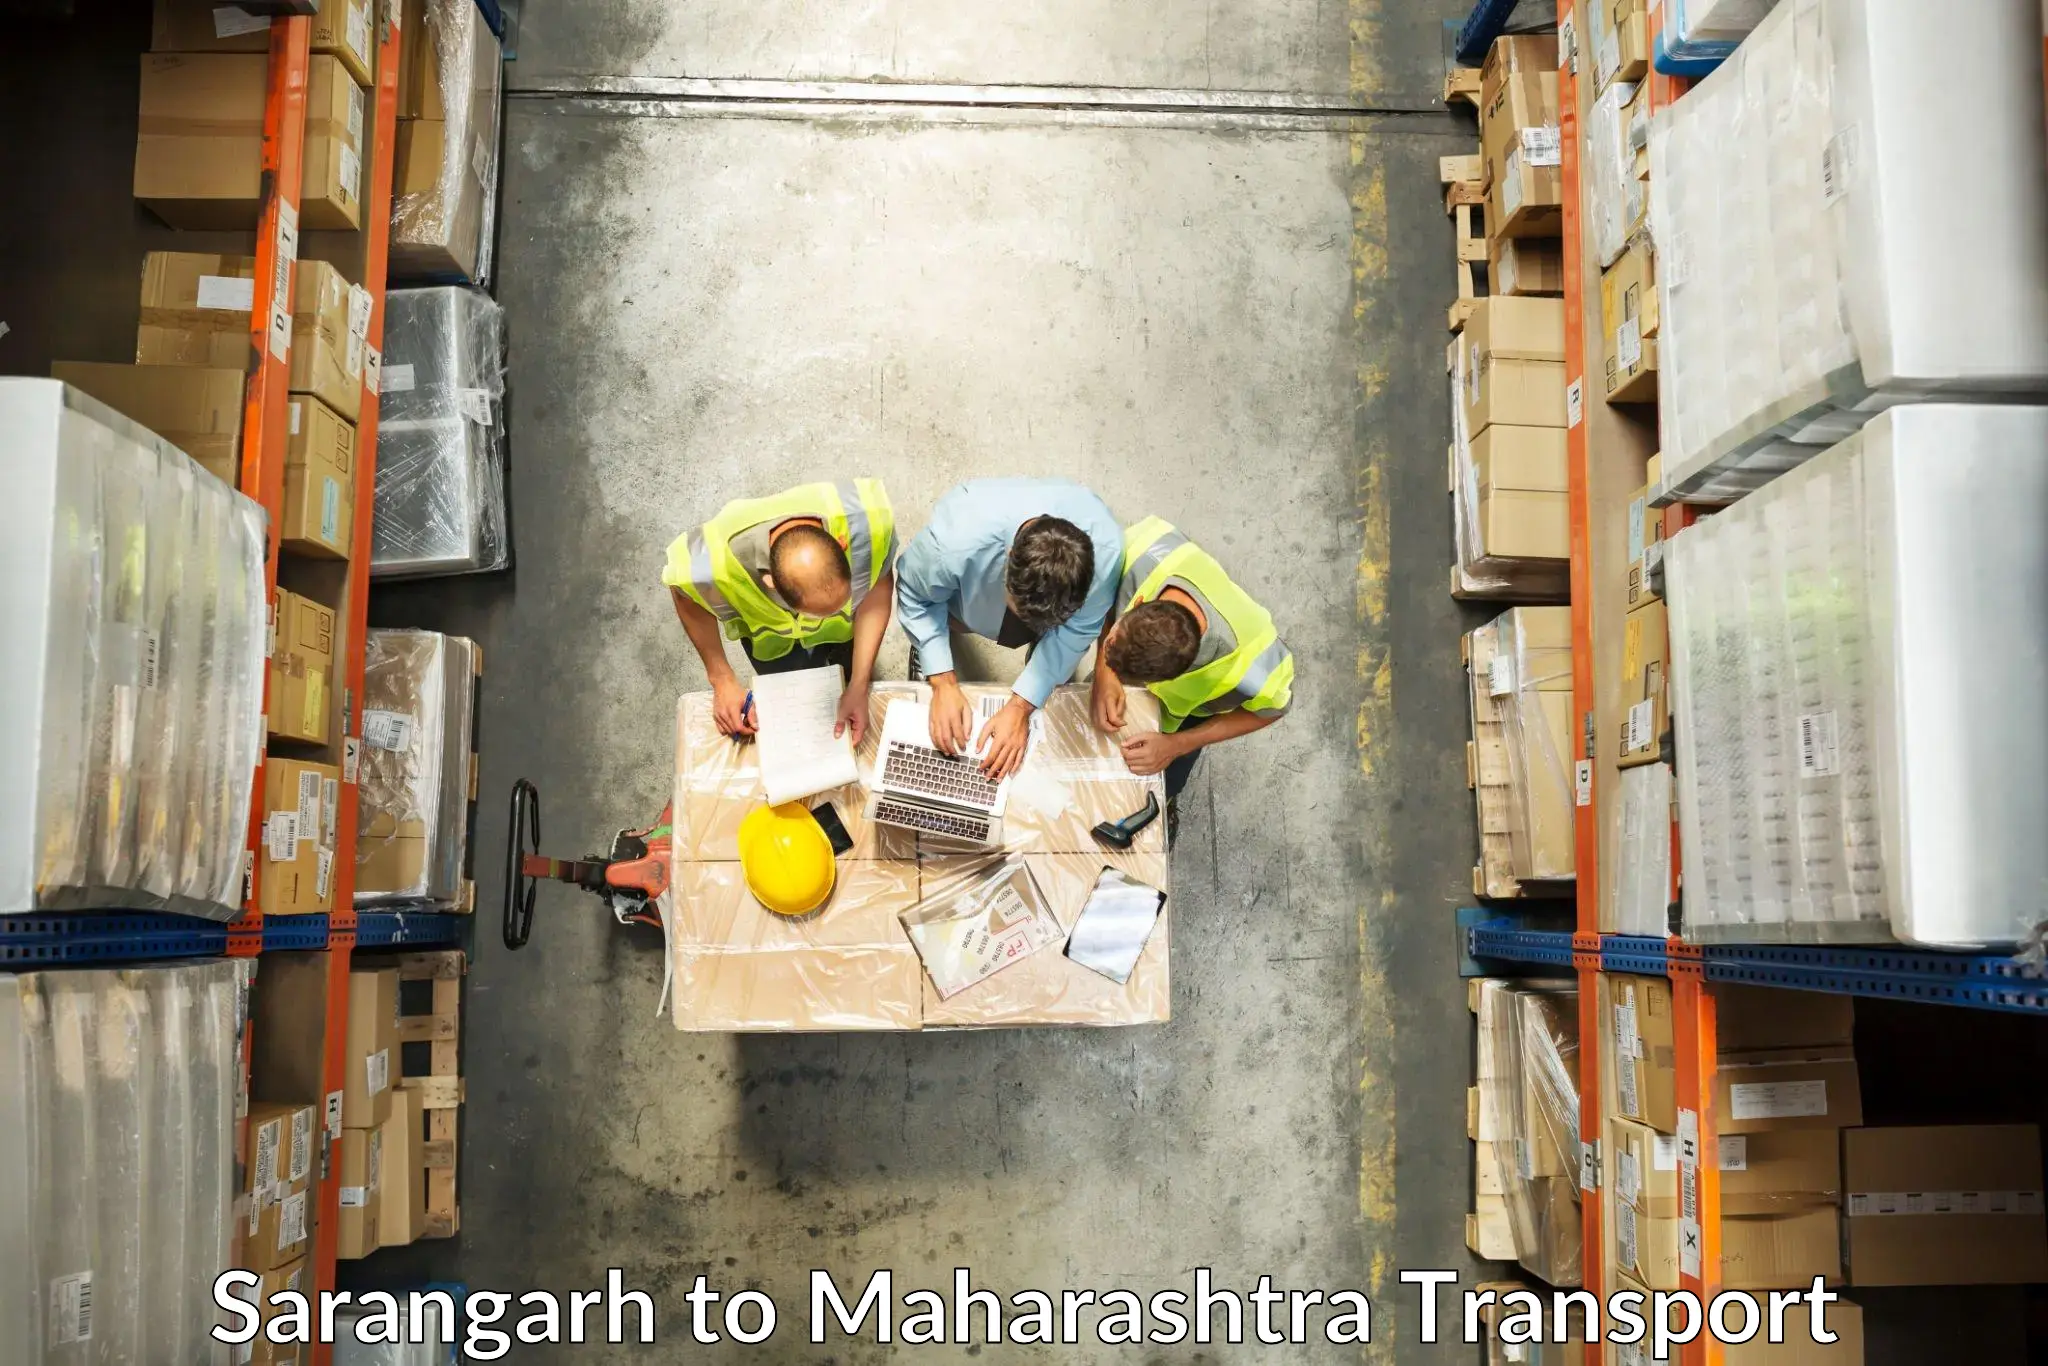 Air freight transport services Sarangarh to Wai